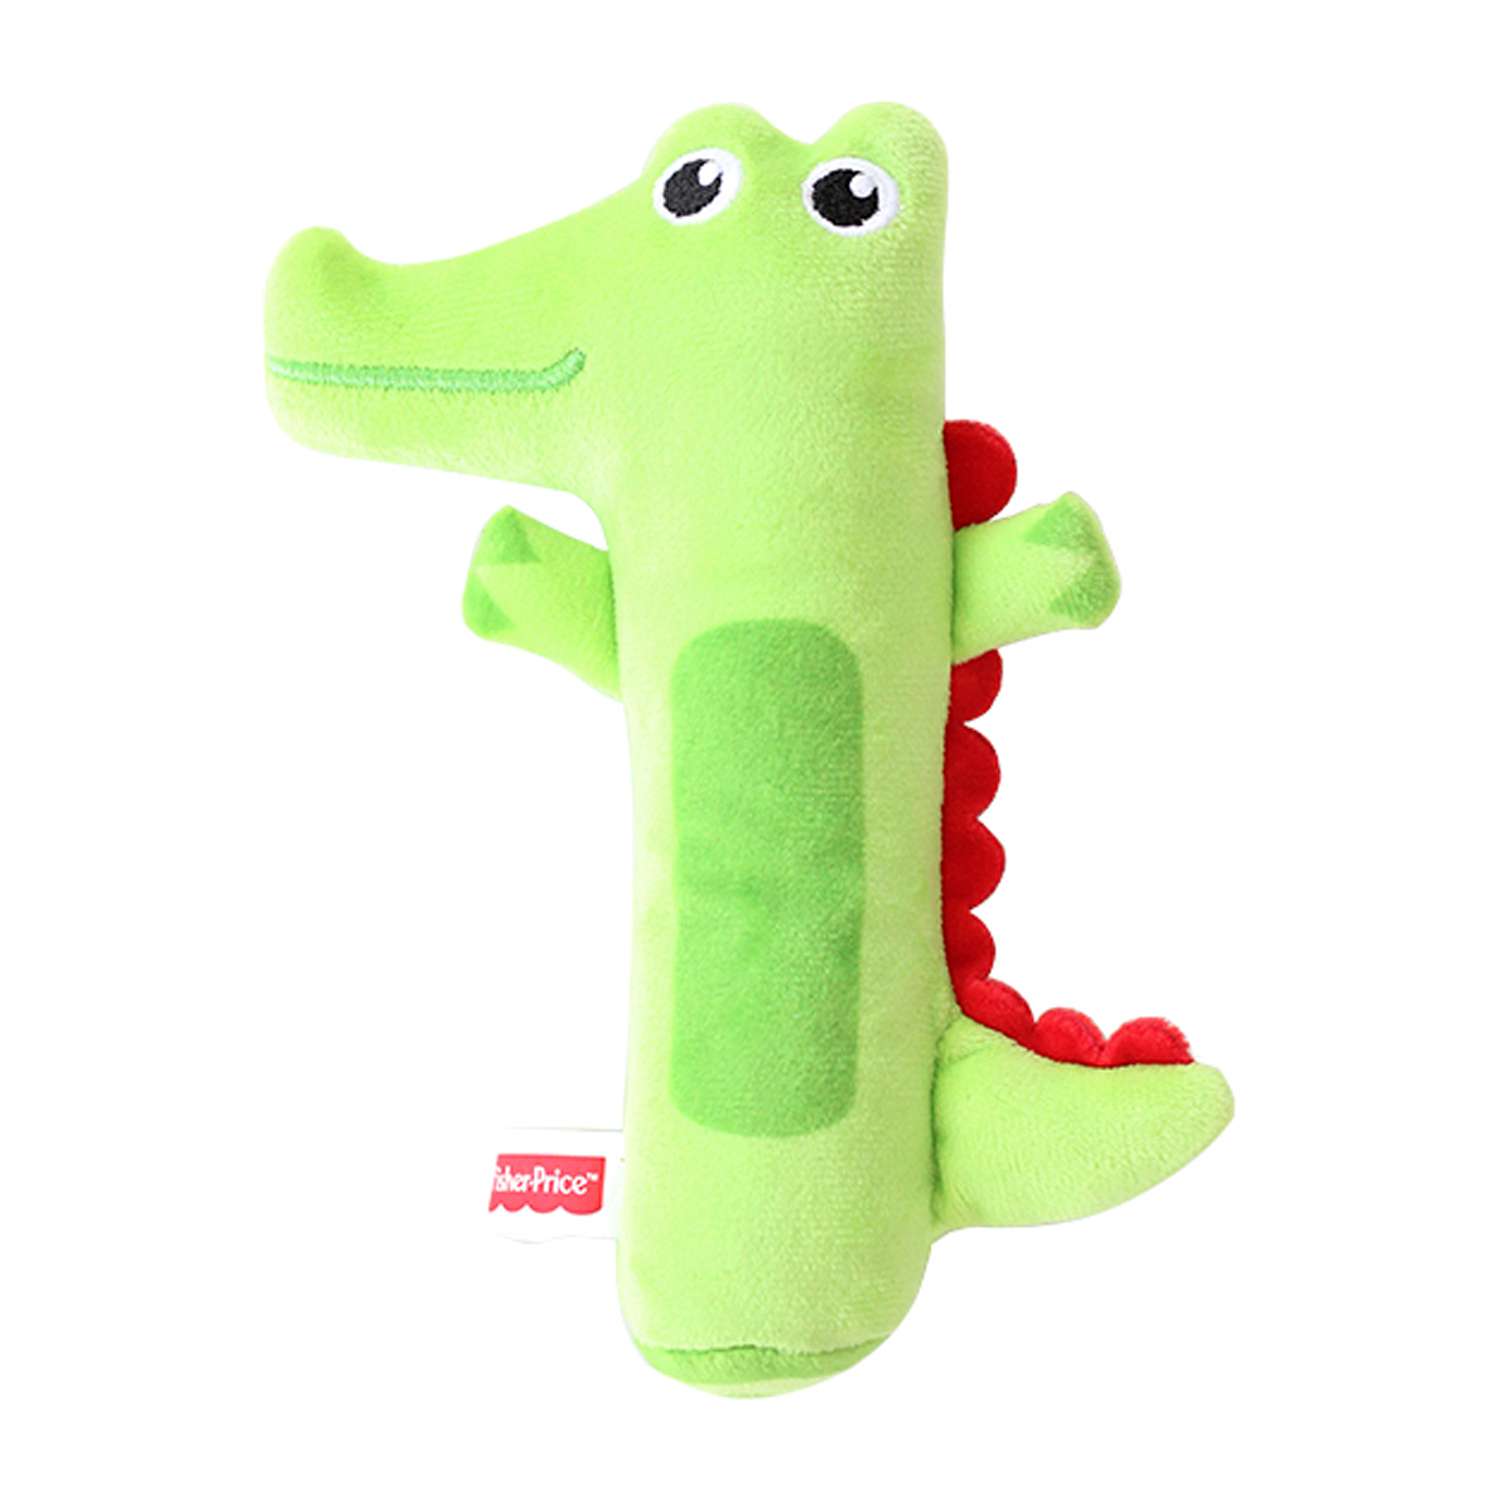 Погремушка-пищалка Fisher Price Крокодильчик развивающая мягкая игрушка для детей 0+ - фото 1